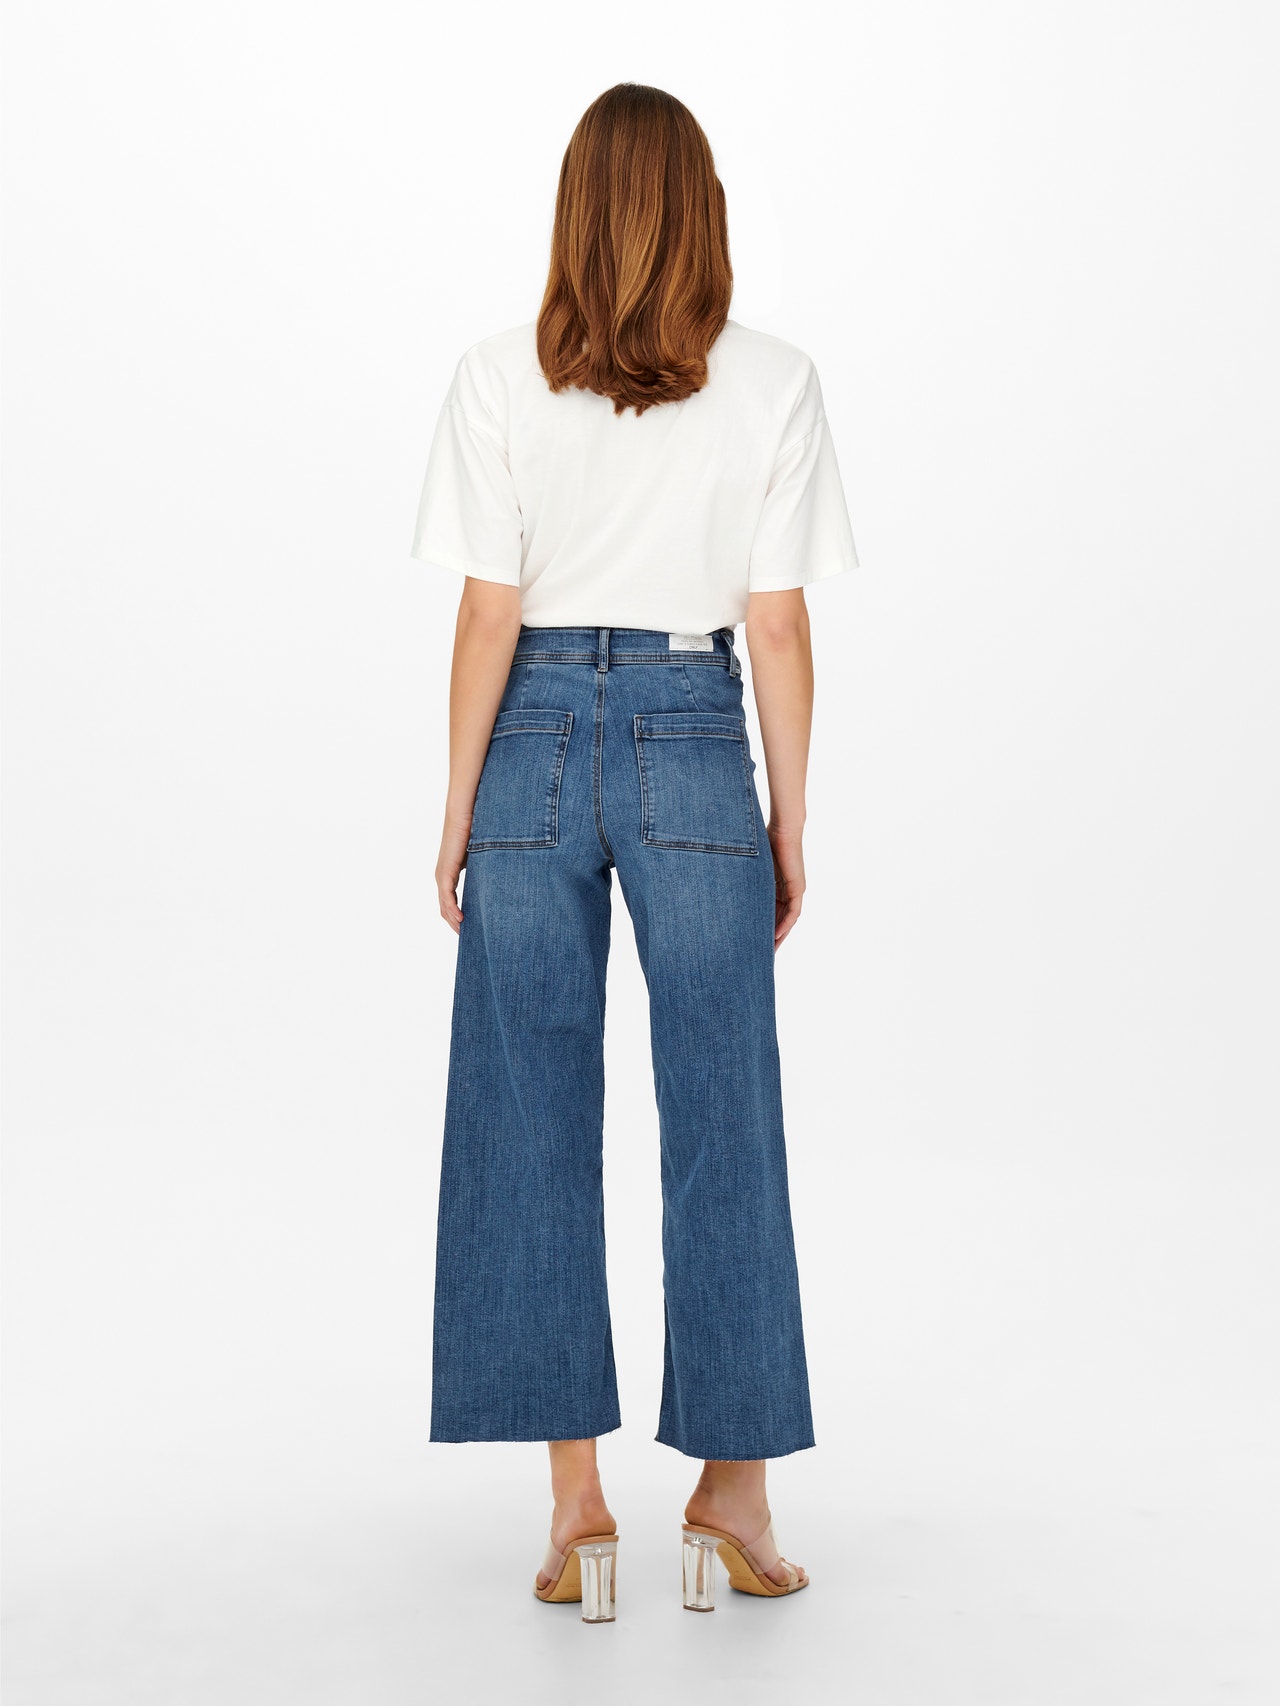 ONLY Straight Fit High waist Cut-off hems Jeans -Medium Blue Denim - 15249868